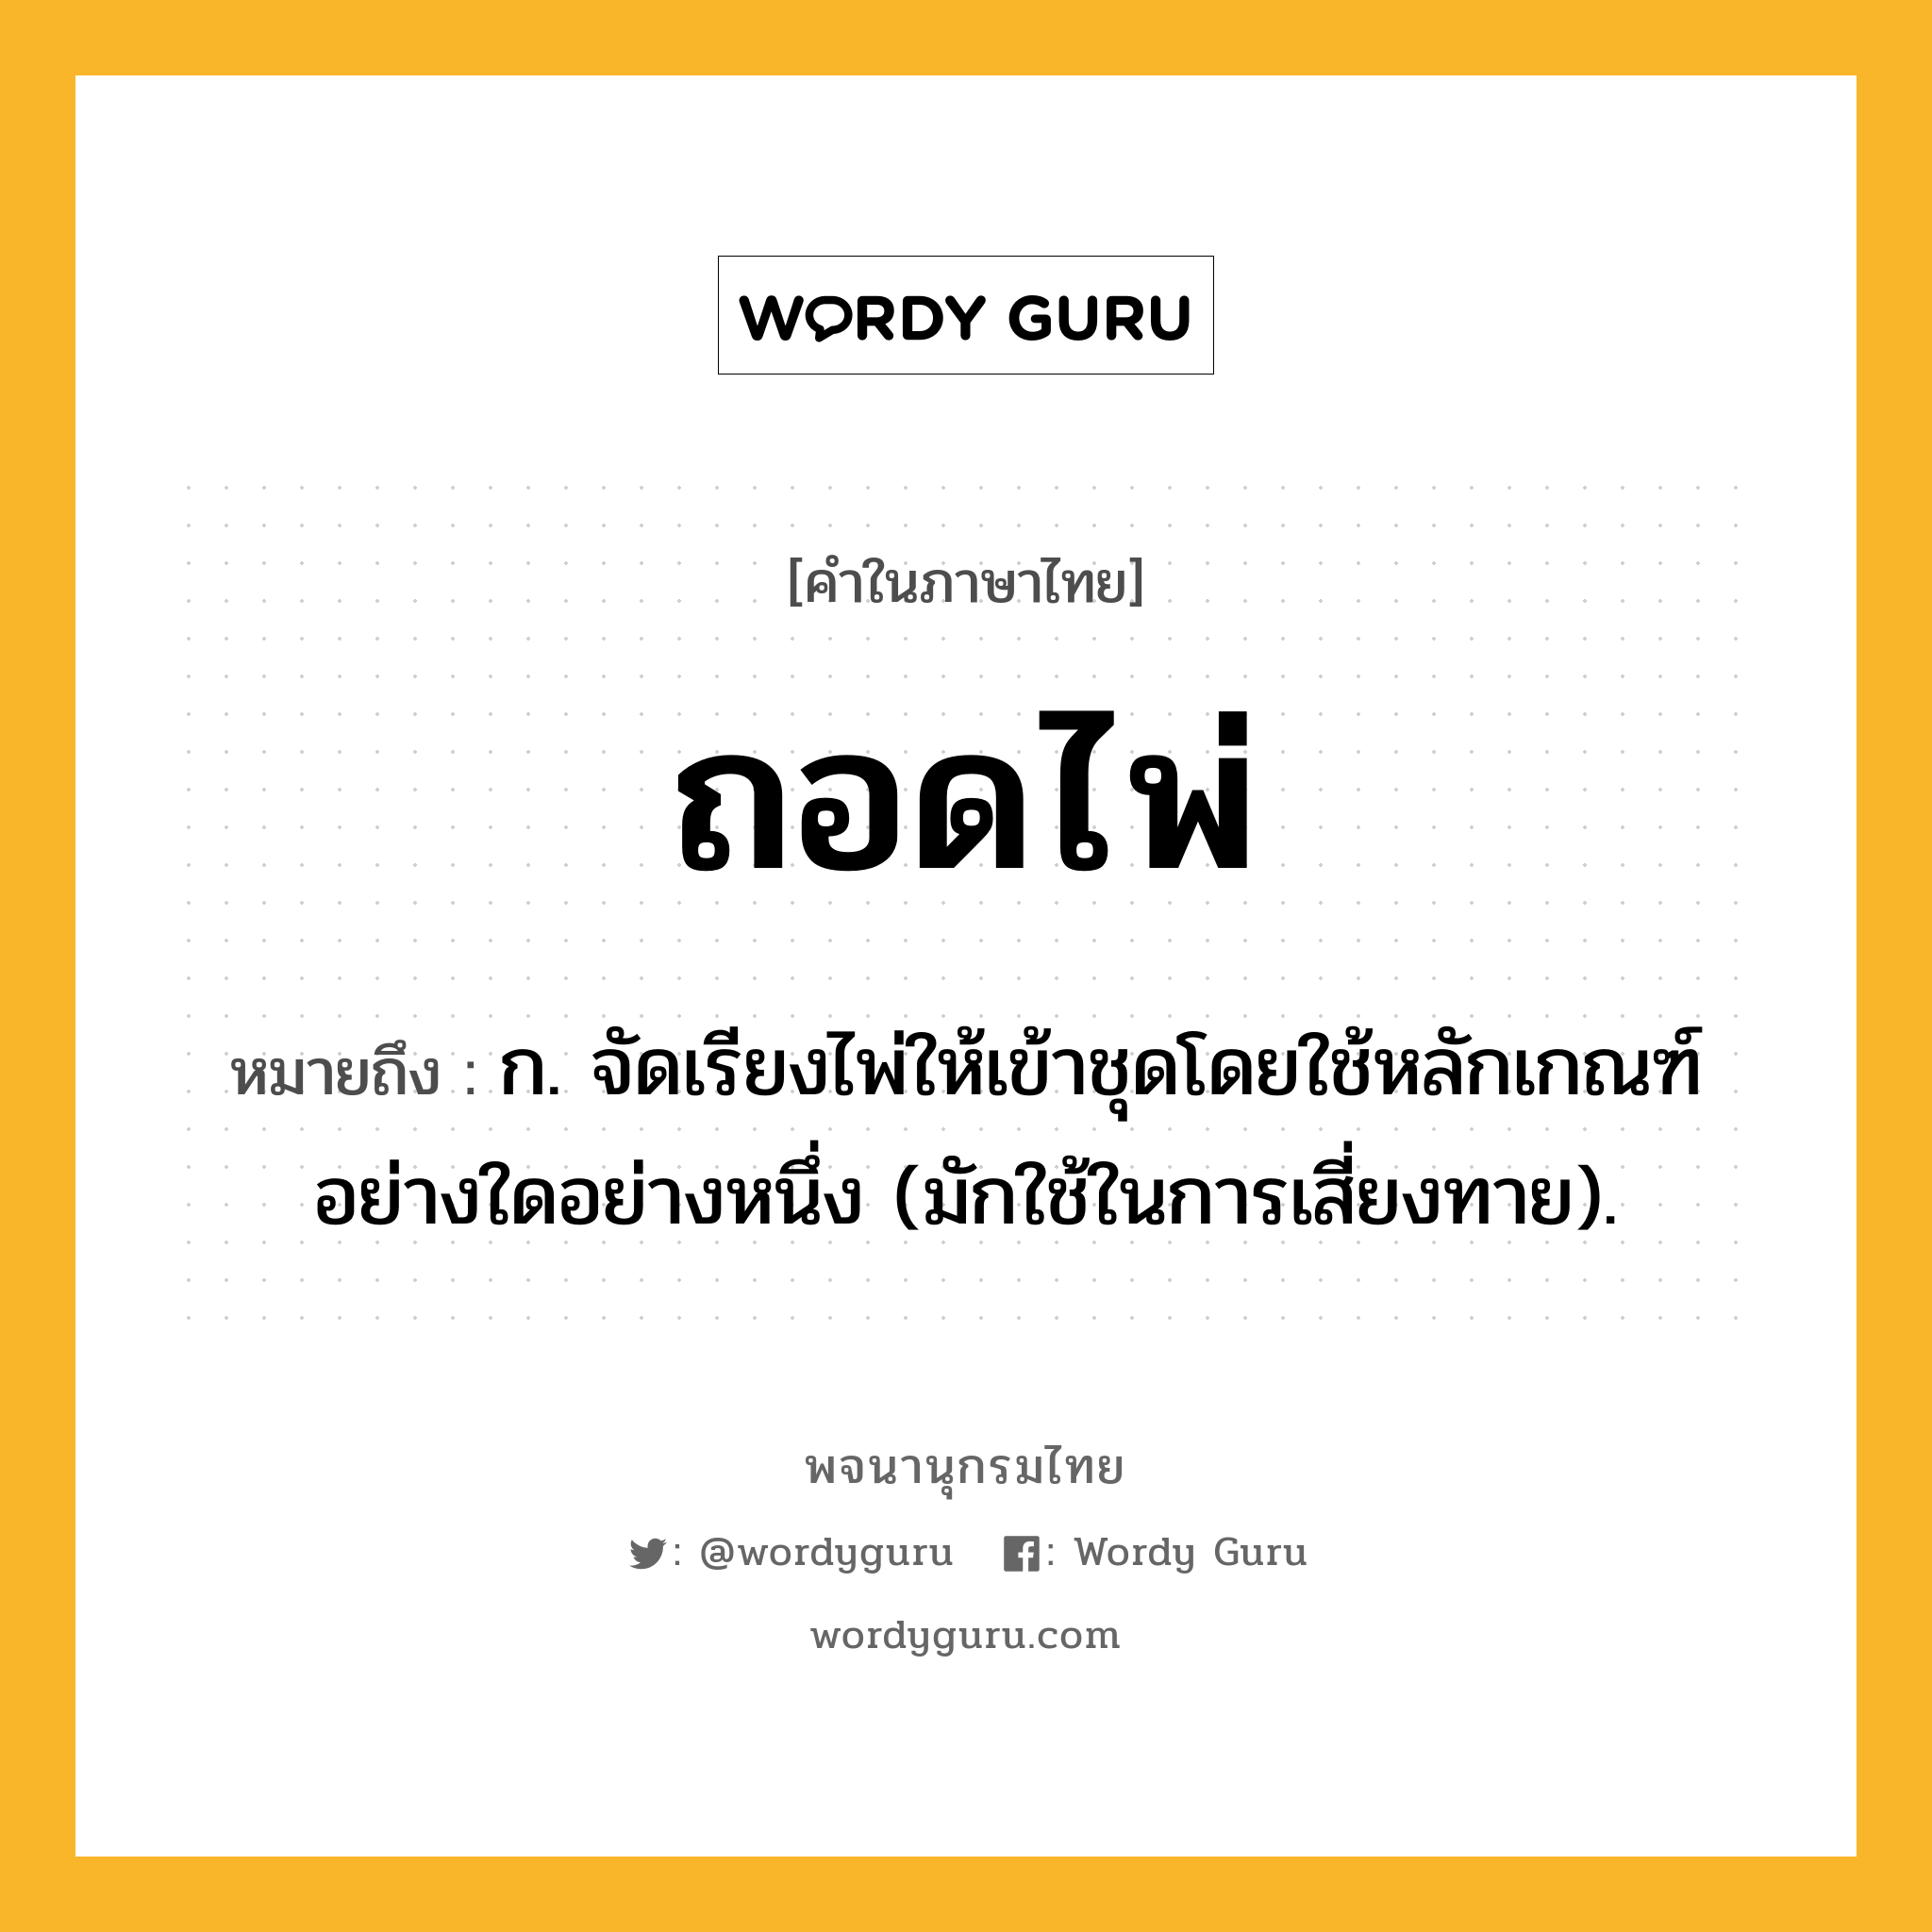 ถอดไพ่ ความหมาย หมายถึงอะไร?, คำในภาษาไทย ถอดไพ่ หมายถึง ก. จัดเรียงไพ่ให้เข้าชุดโดยใช้หลักเกณฑ์อย่างใดอย่างหนึ่ง (มักใช้ในการเสี่ยงทาย).